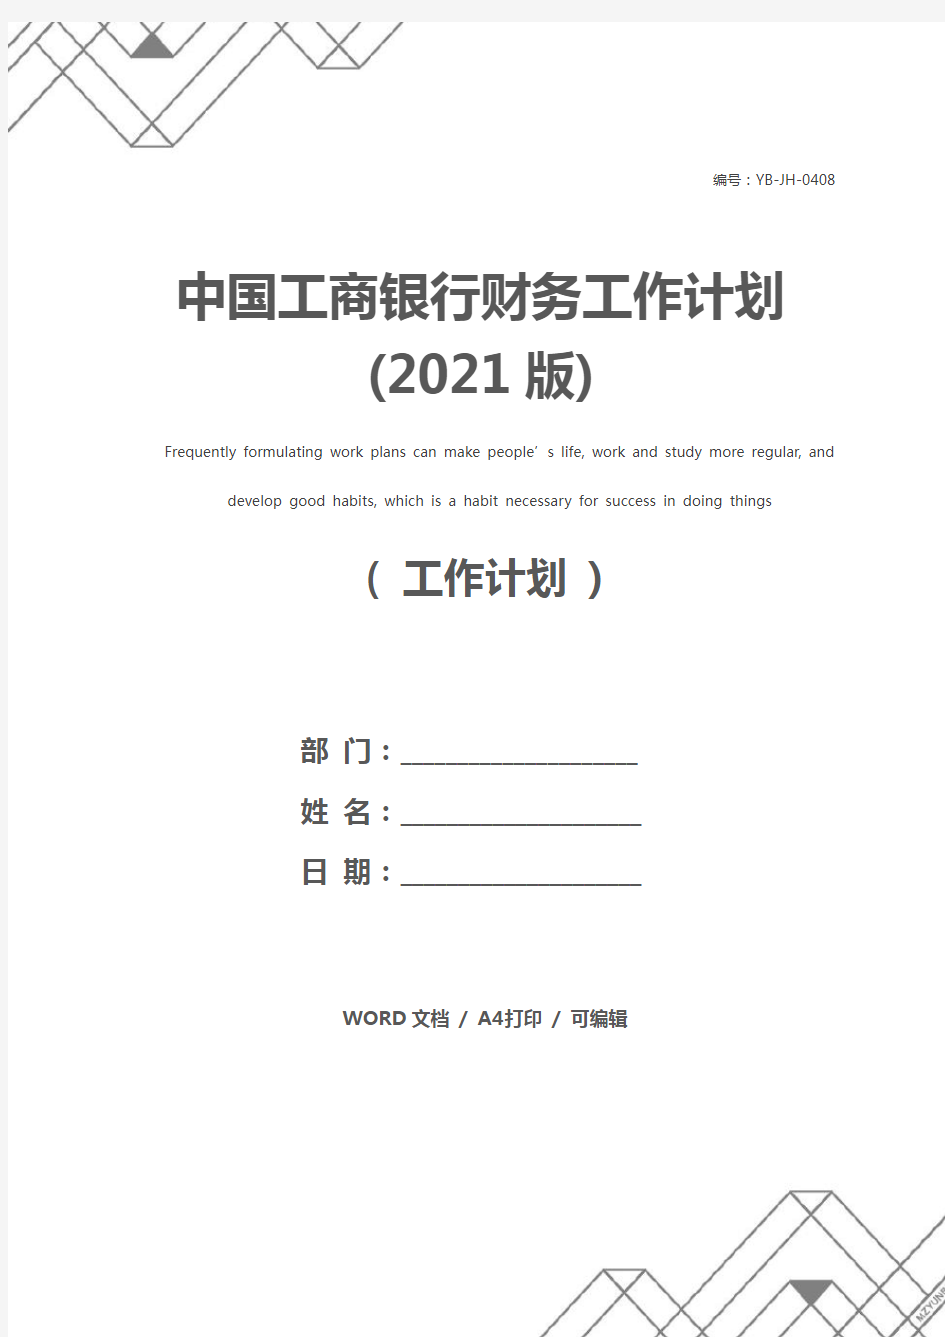 中国工商银行财务工作计划(2021版)